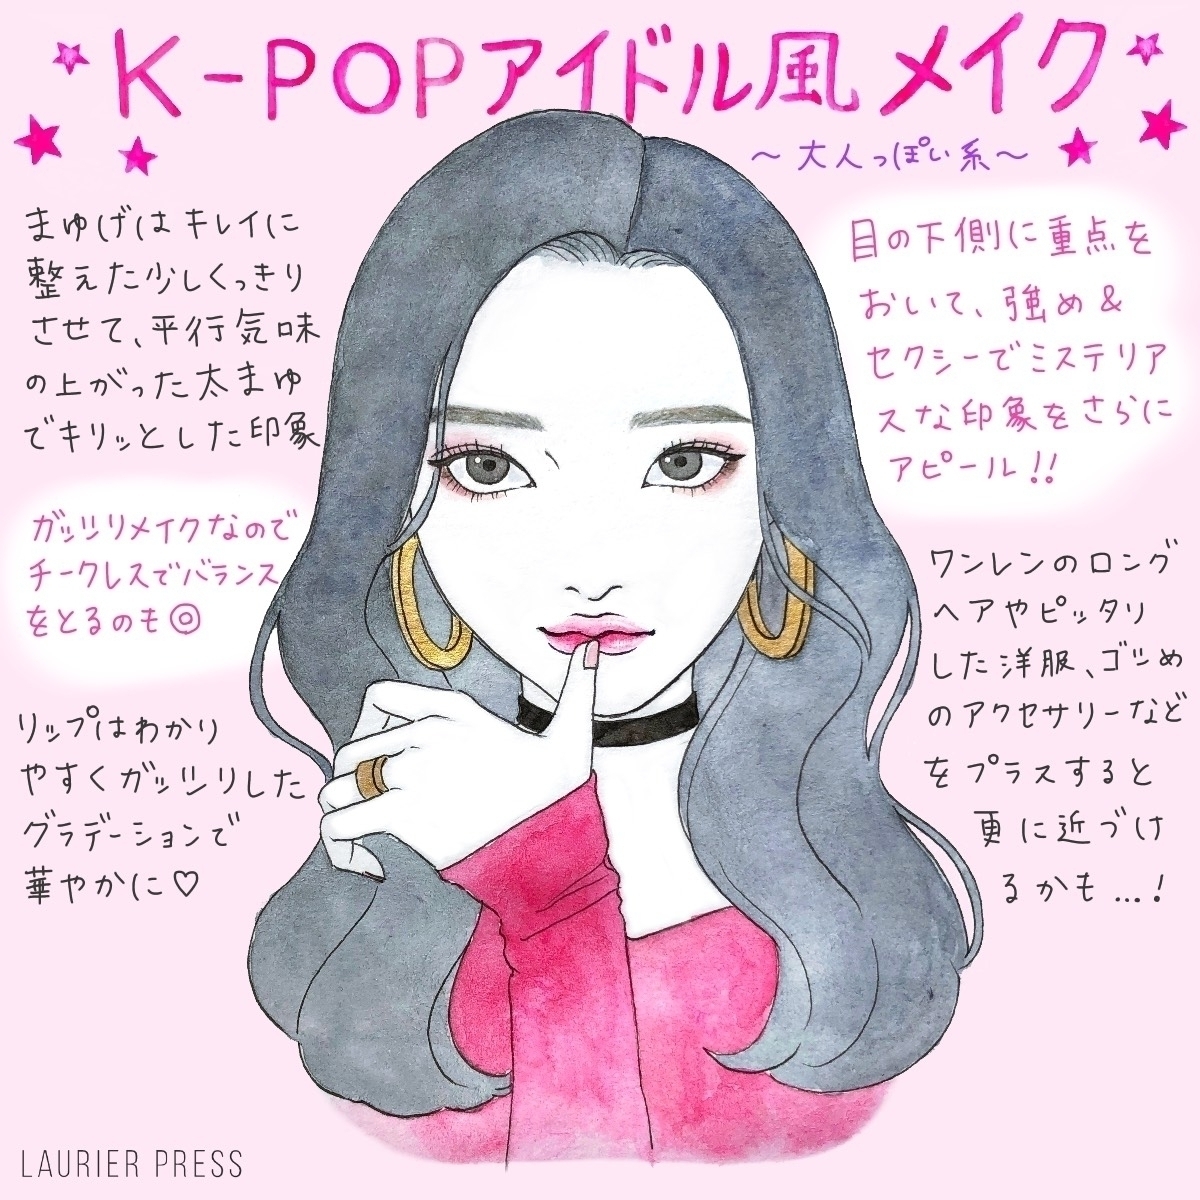 K Popアイドル風メイクのコツ かわいい系 かっこいい系の2パターン